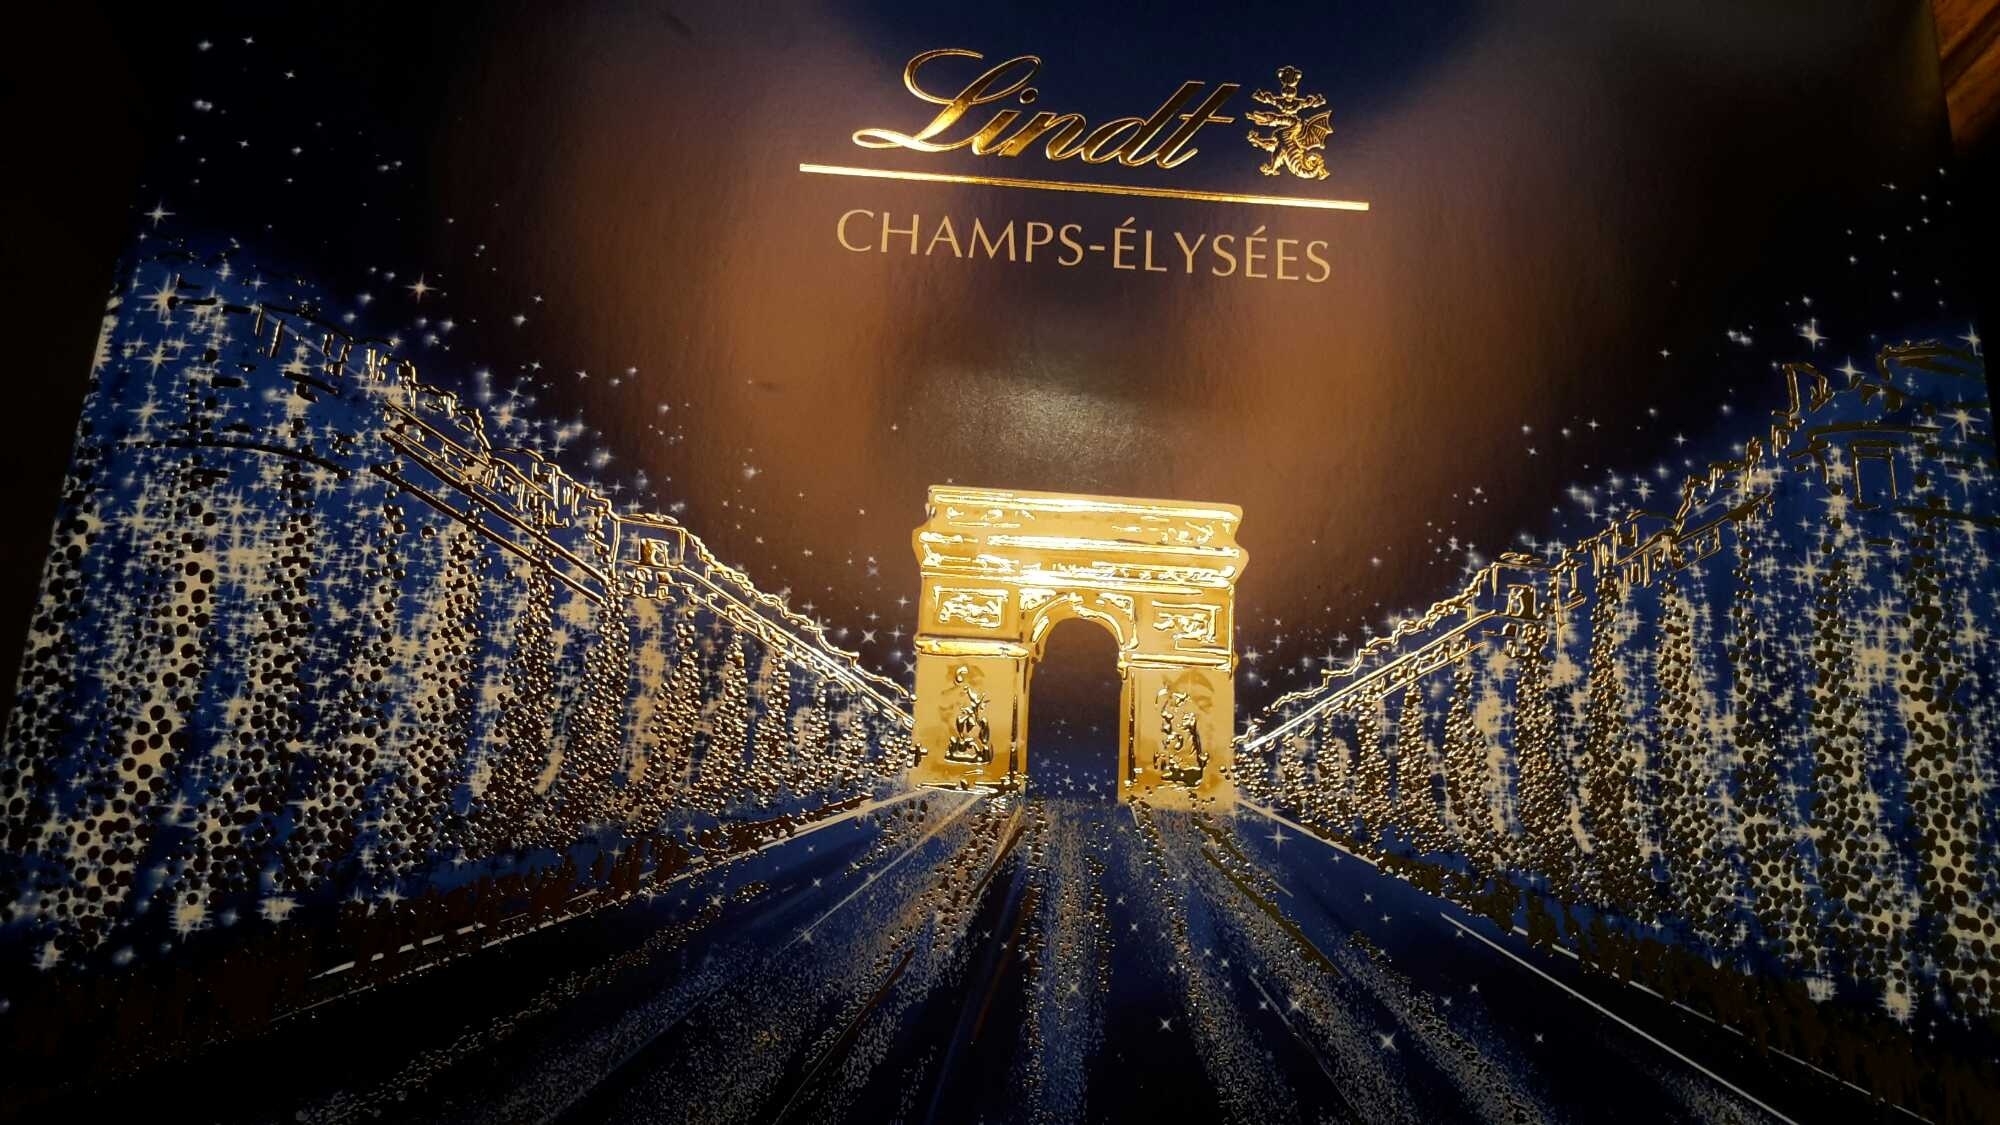 Chocolats Lindt Champs Elysées - Product - fr